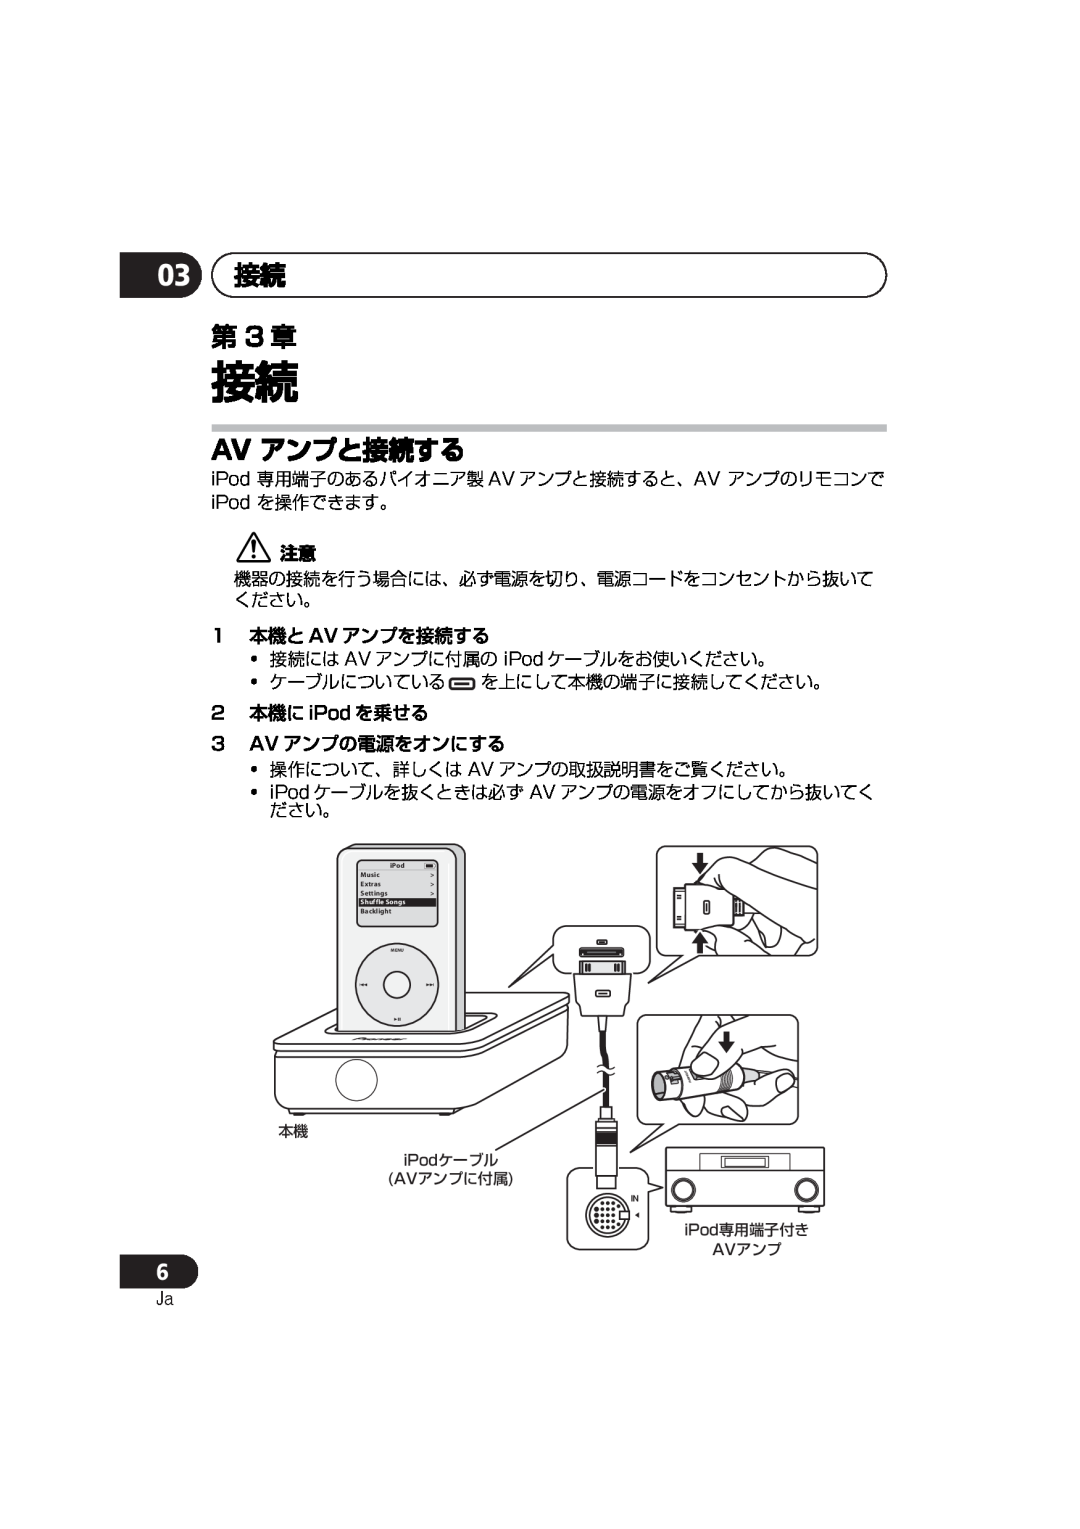 Pioneer IDK-80 manual 03 接続 第 3 章, Av アンプと接続する, 1 本機と AV アンプを接続する, 2 本機に iPod を乗せる 3 AV アンプの電源をオンにする 